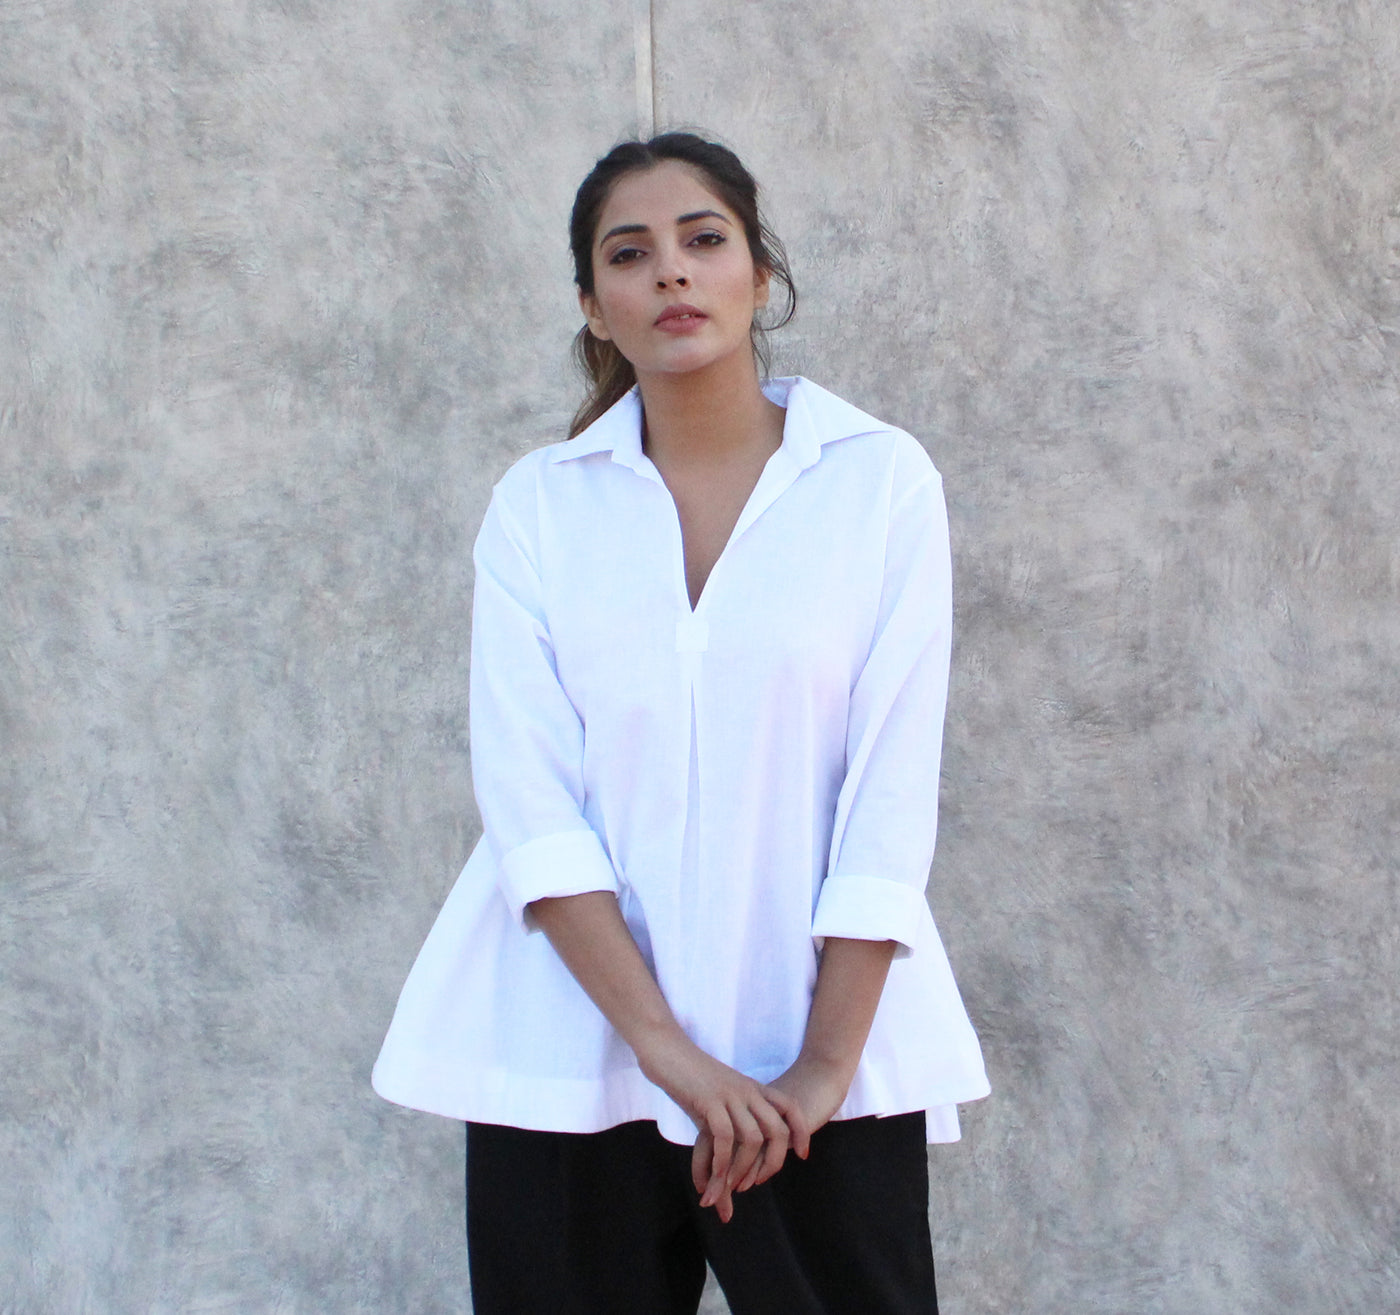 Women's linen blouse white Linen collar shirt, T-shirt in 3/4 sleeves Linen Shirt Blouse, Collared Shirt Top, Casual Top ,Linen Summer Trend, Handmade in India